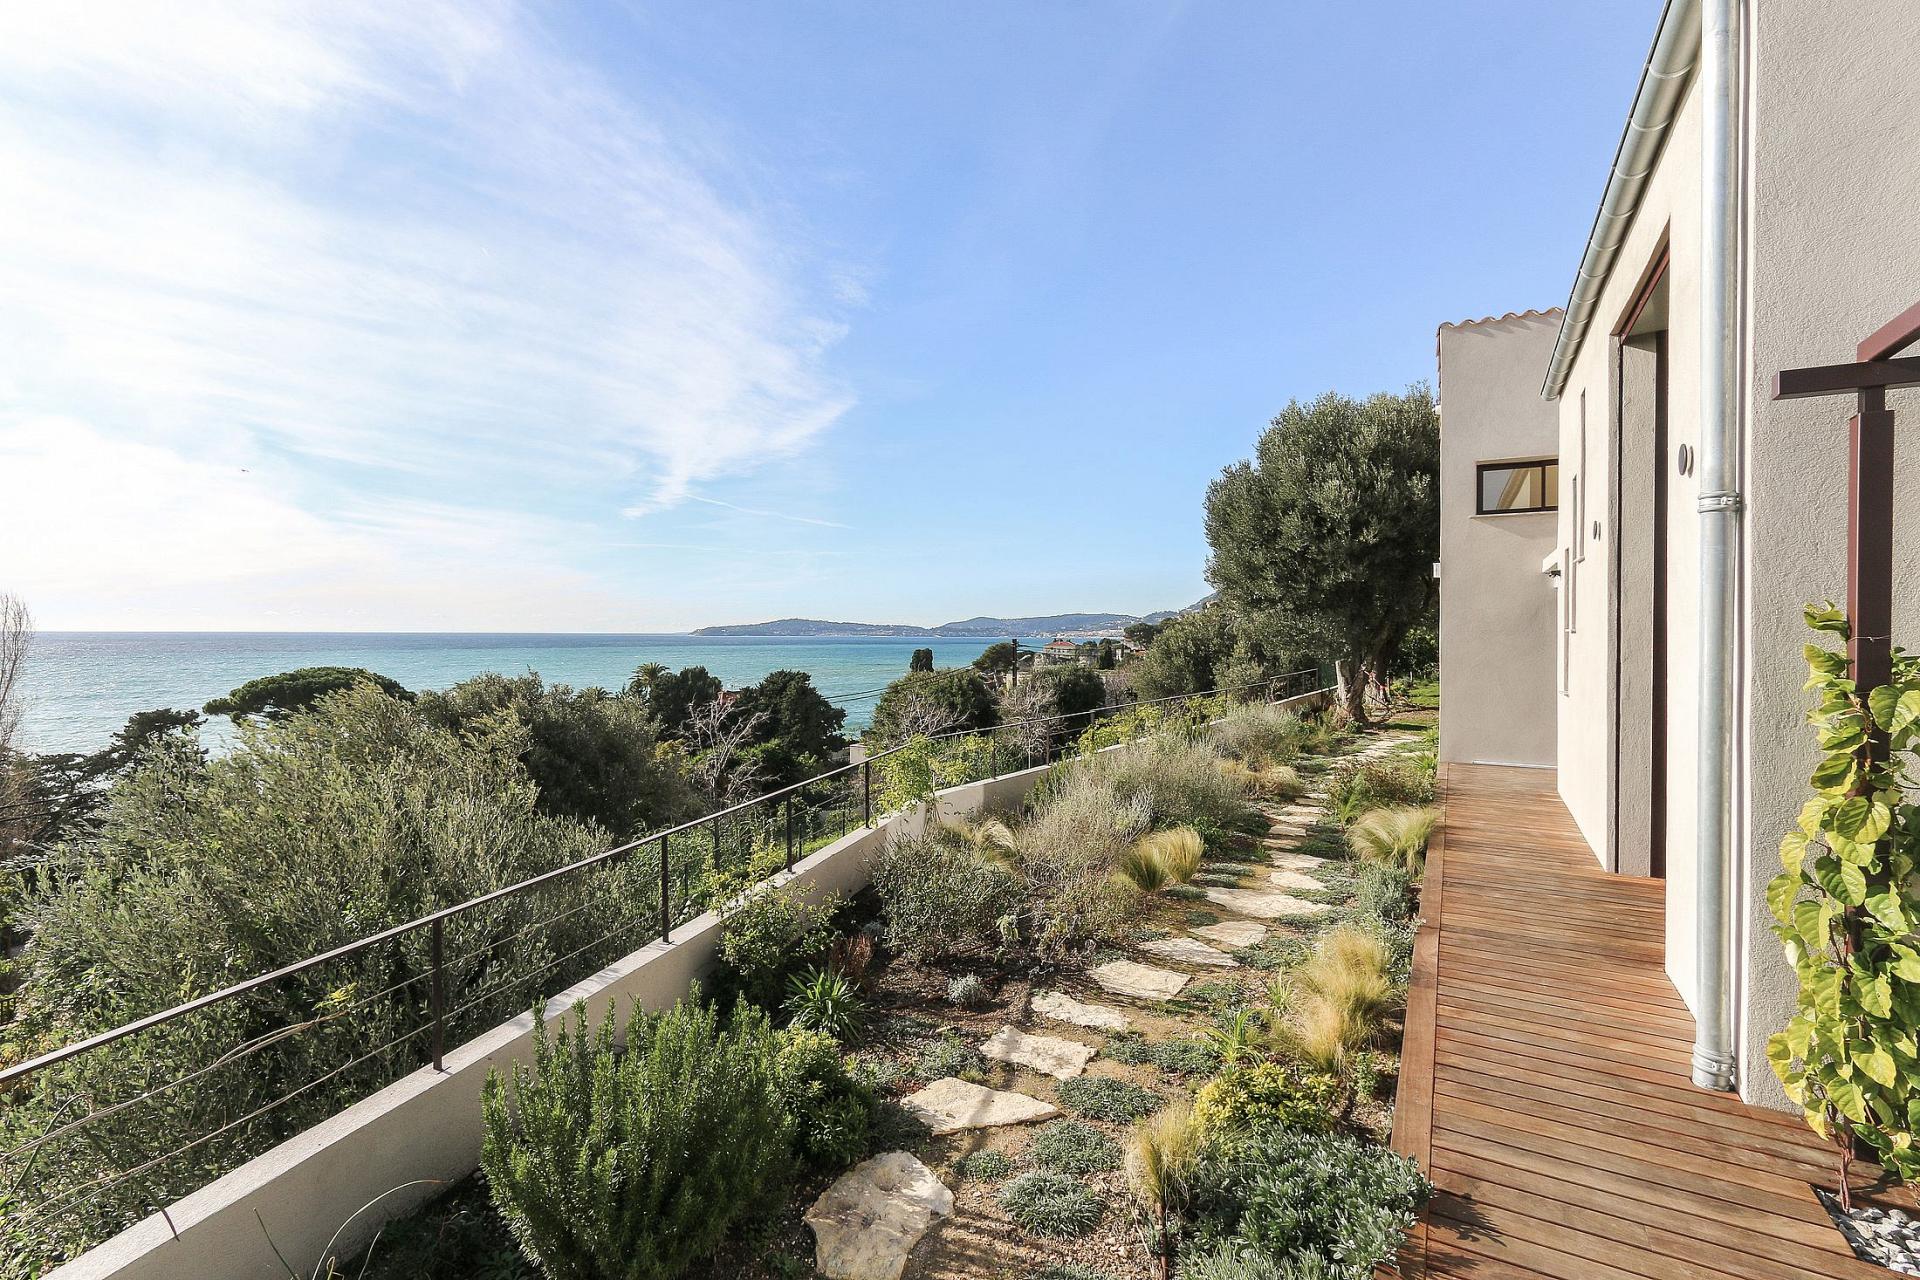 New villa calm close seafront